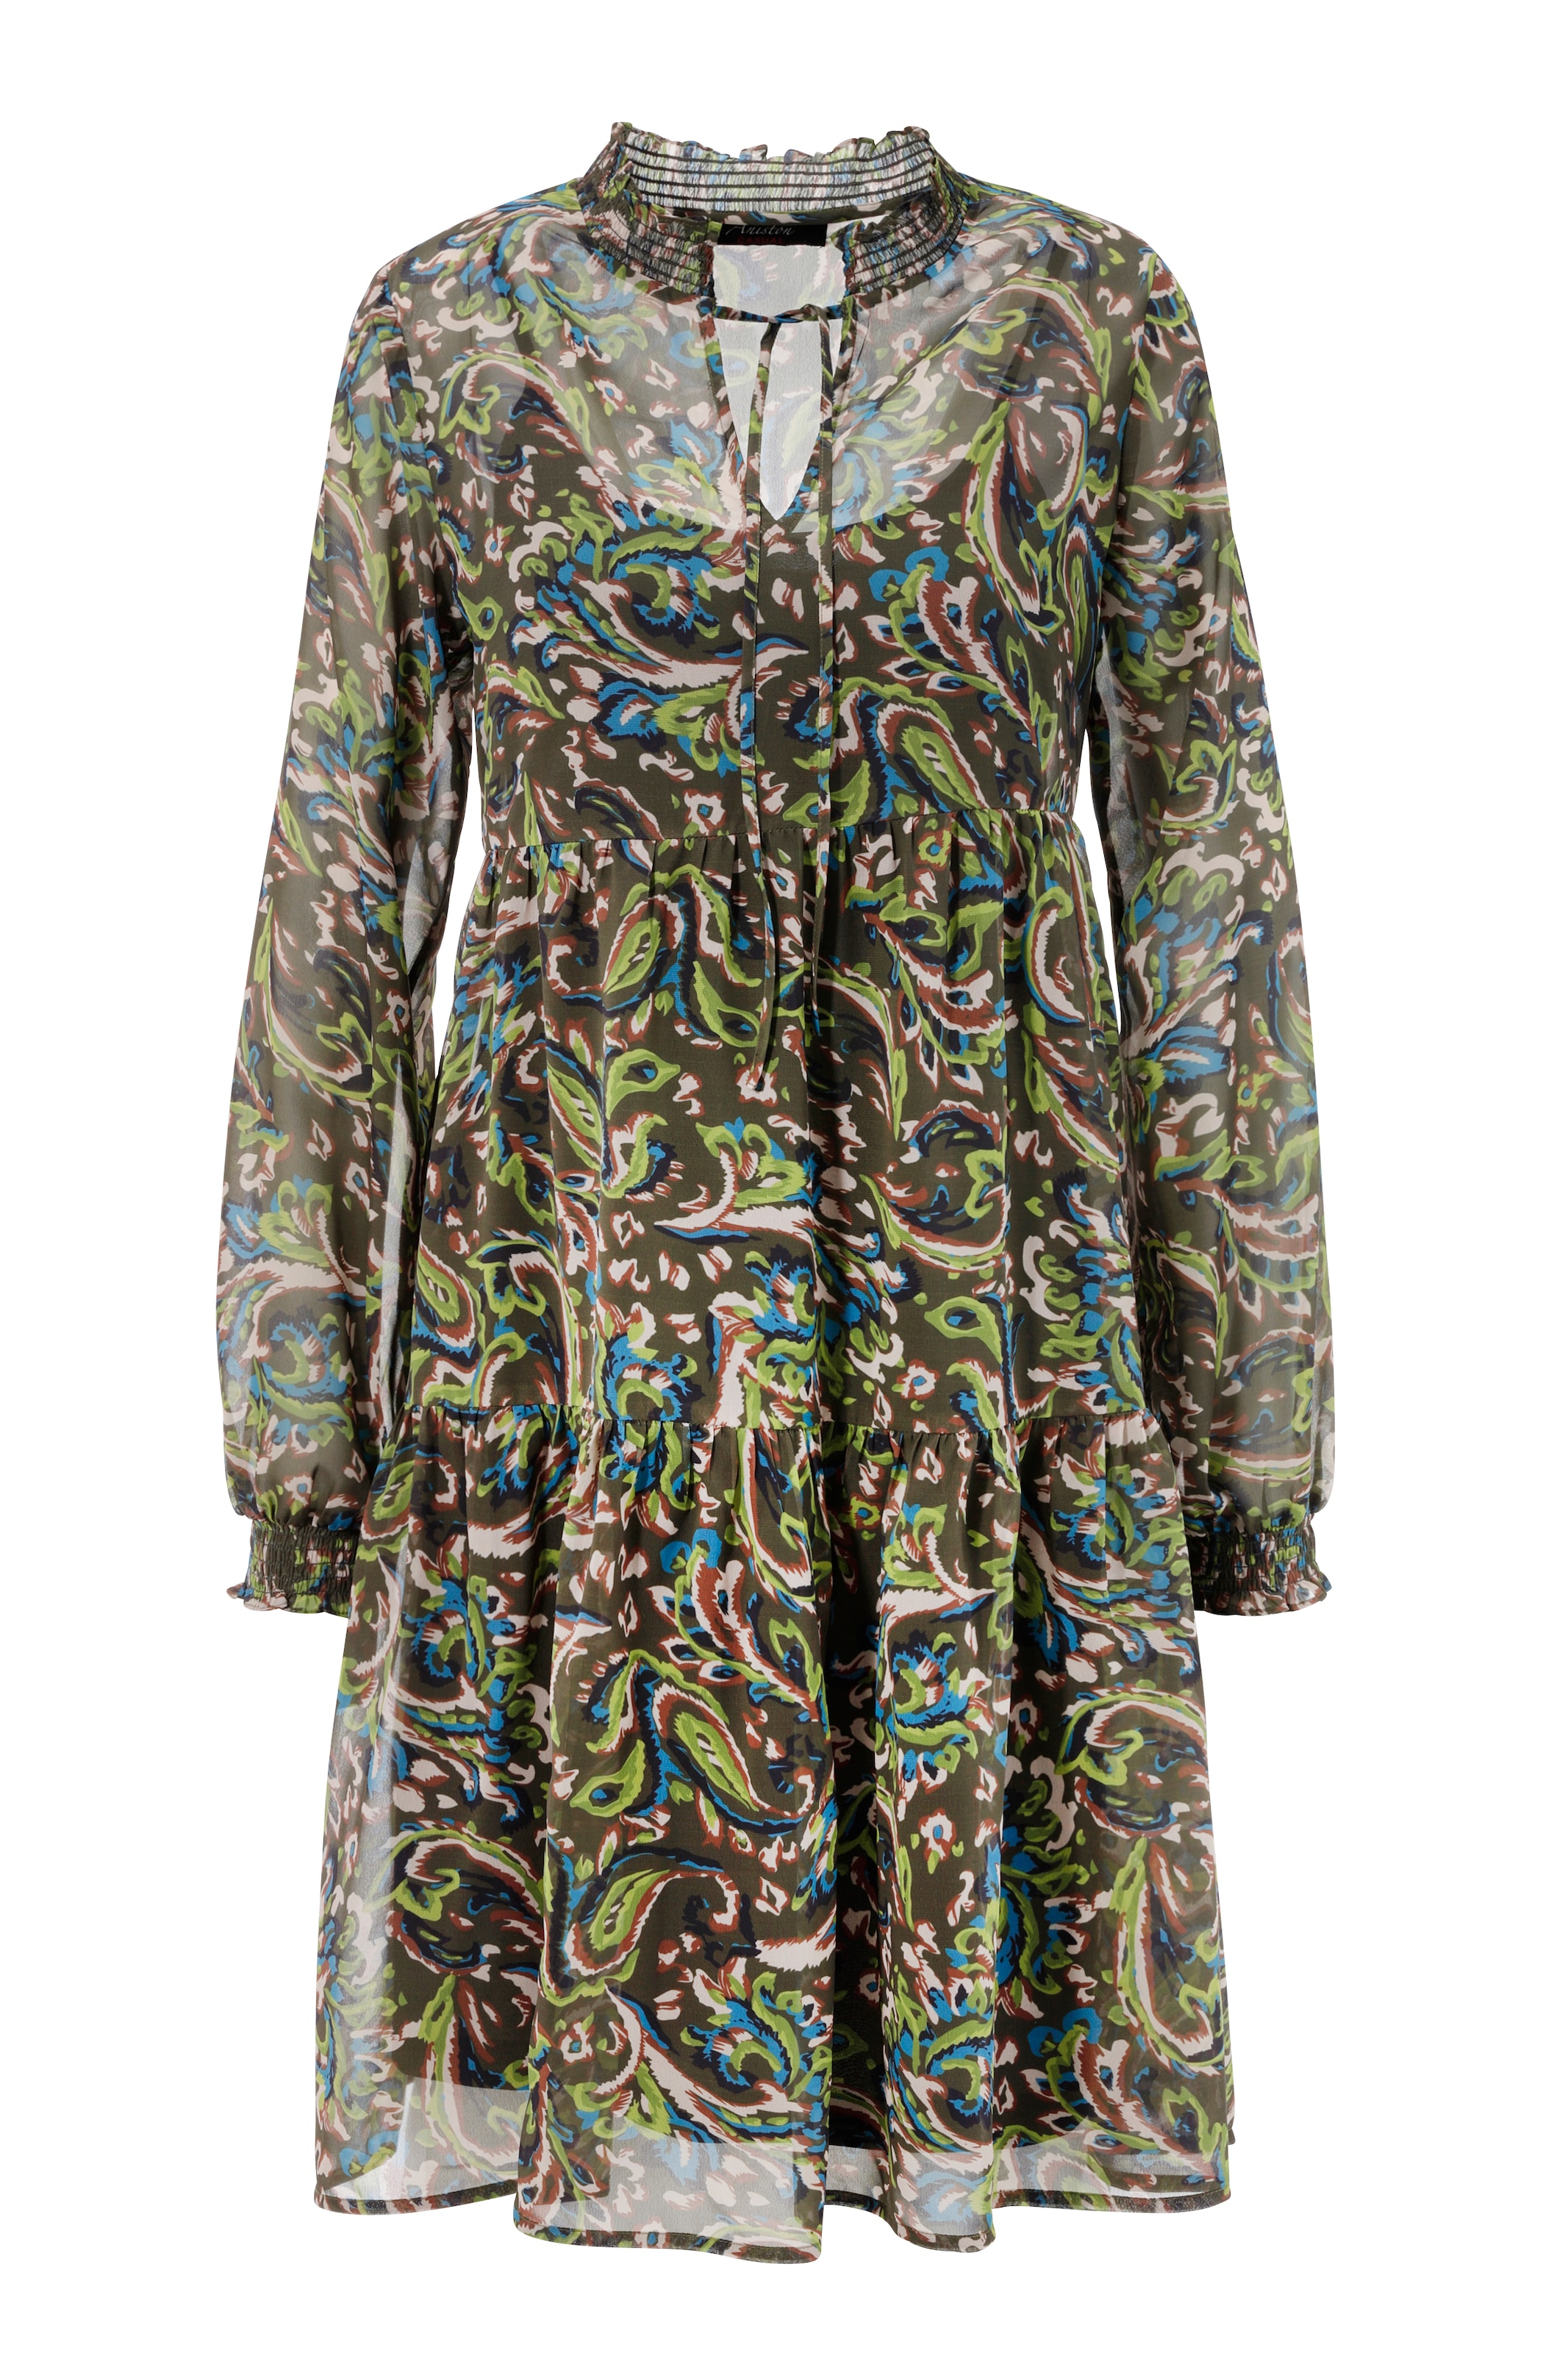 Aniston CASUAL Blusenkleid, mit ♕ Druck graphischem farbenfrohem, bei